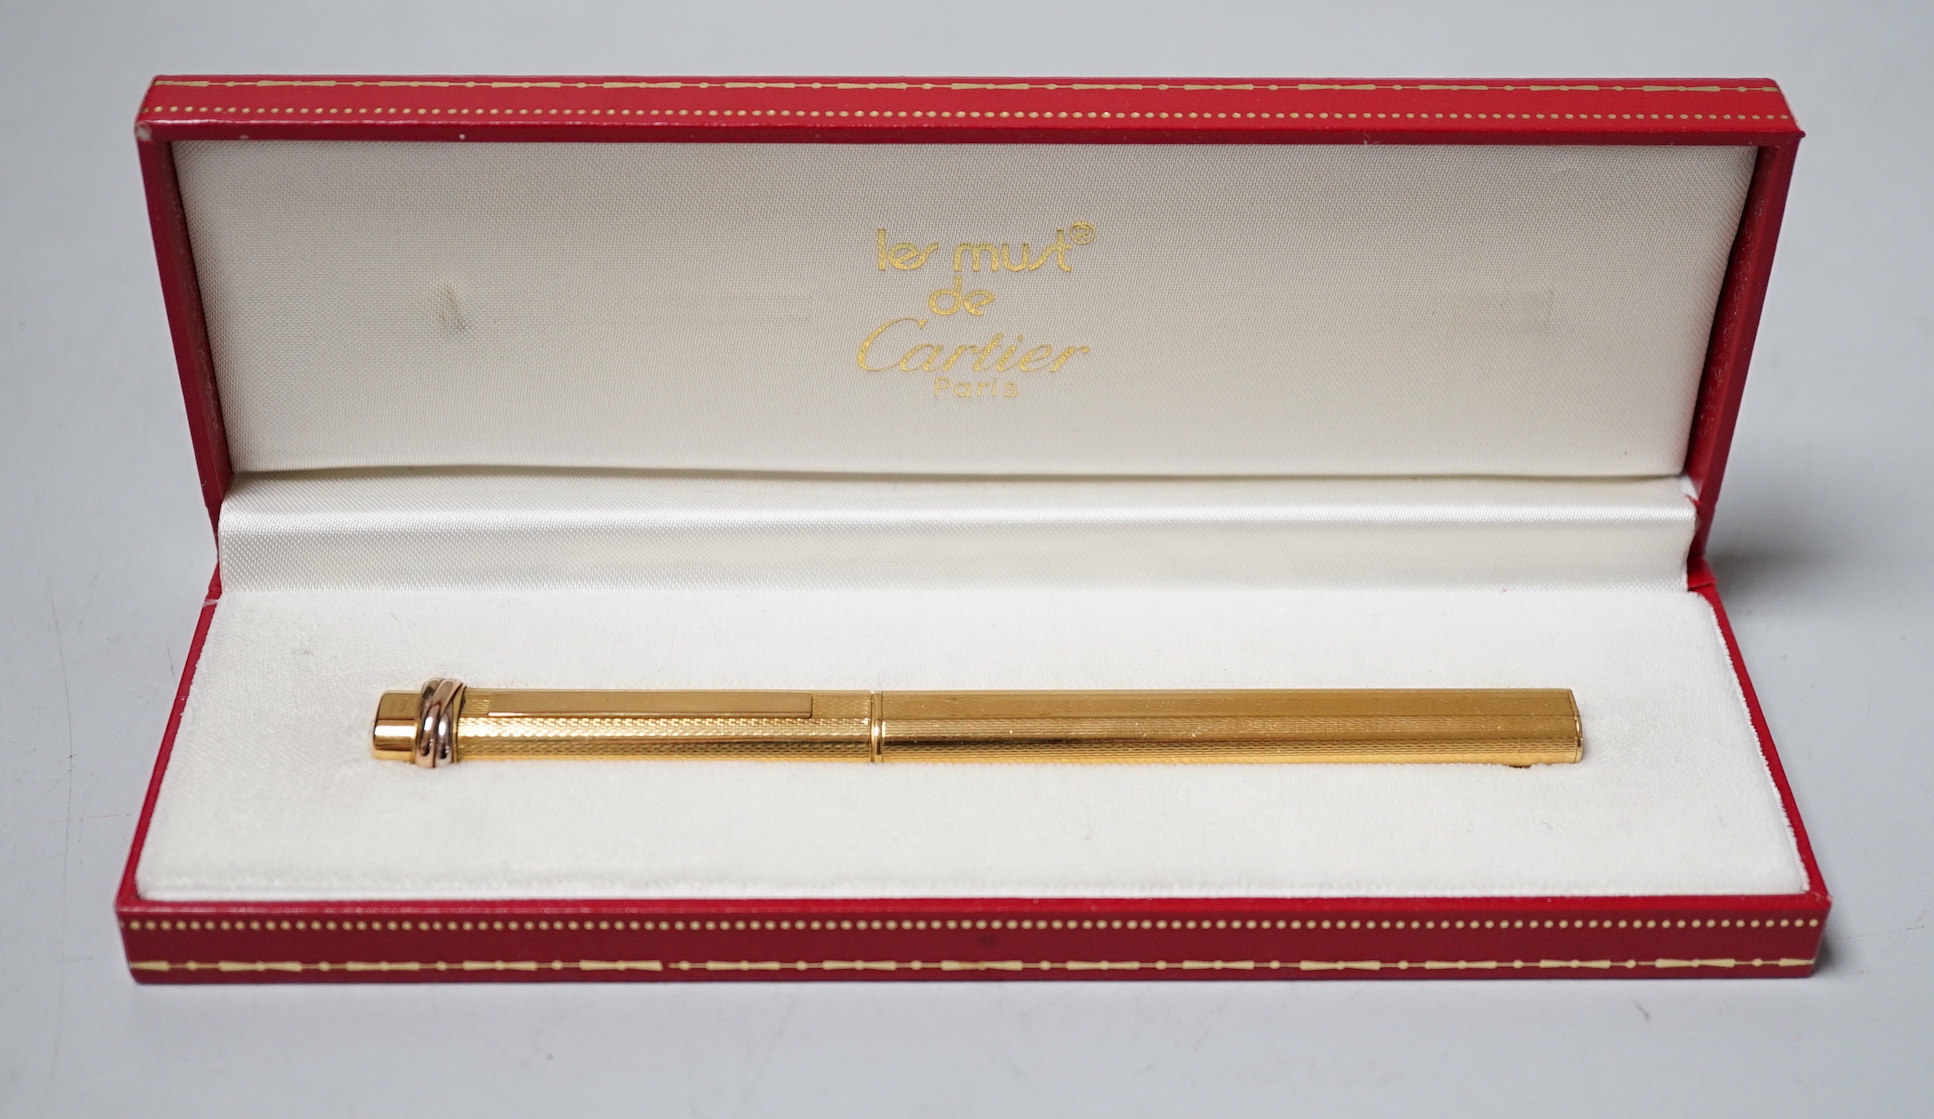 A boxed Must de Cartier pen